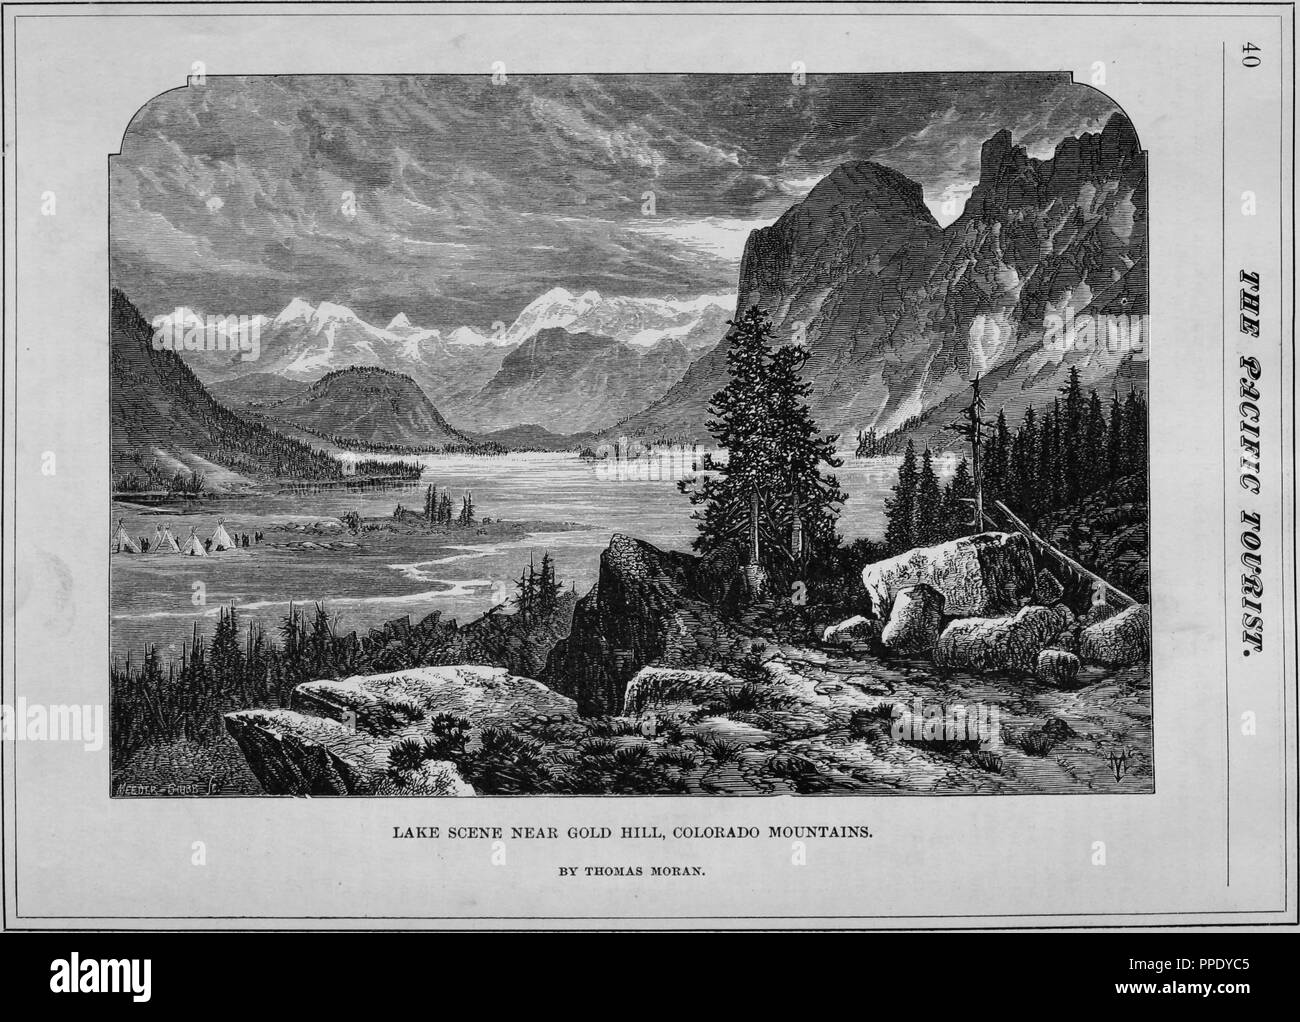 Incisione di un lago vicino alla Collina d'oro, Colorado Montagne, dal libro "pacifico" turistiche, Contea di Boulder, Colorado, 1877. La cortesia Internet Archive. () Foto Stock